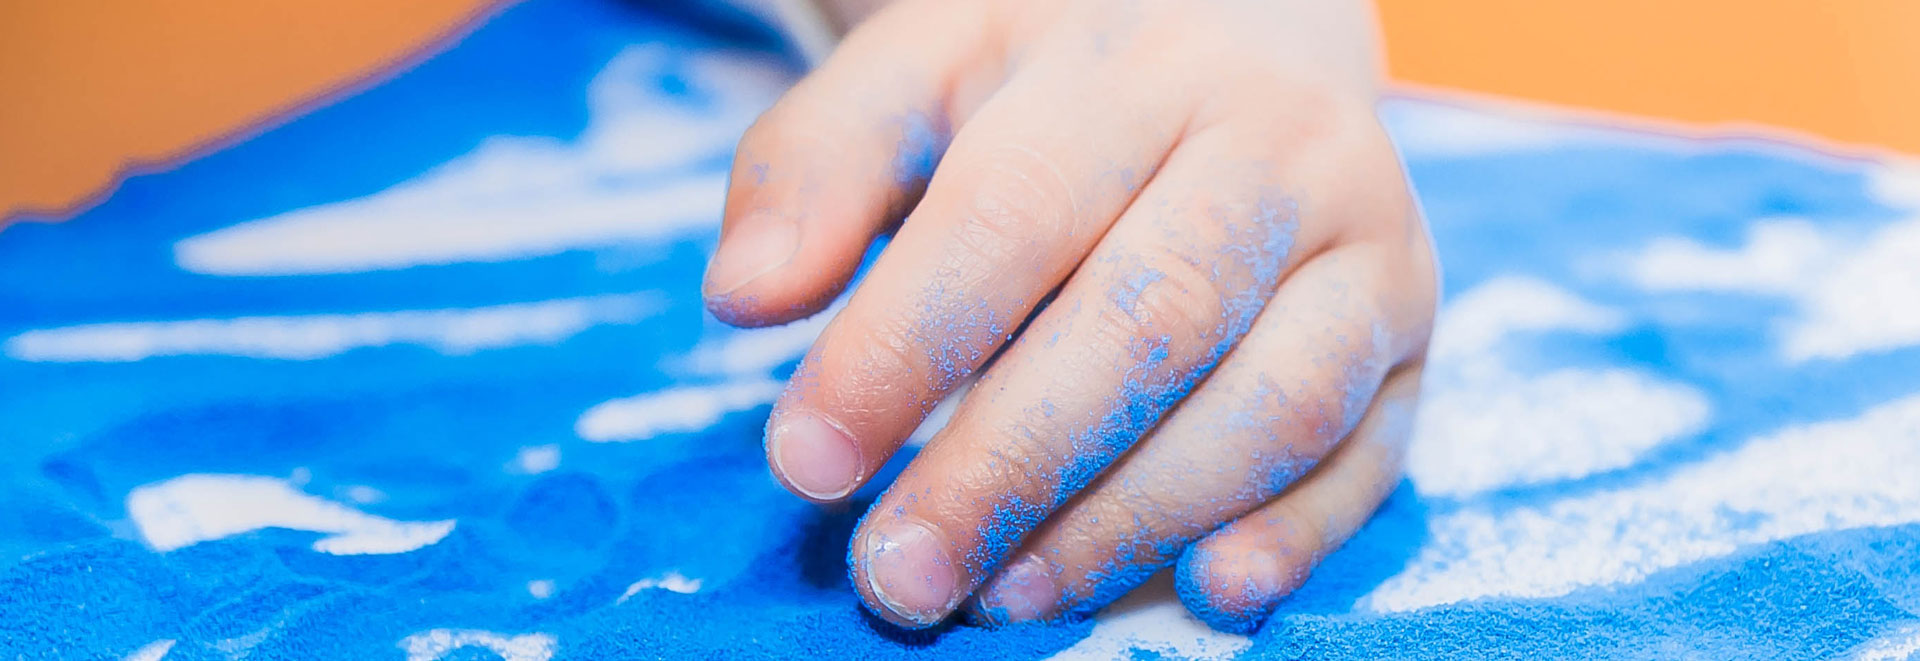 Ergotherapie Gute - Hand in blauem Sand